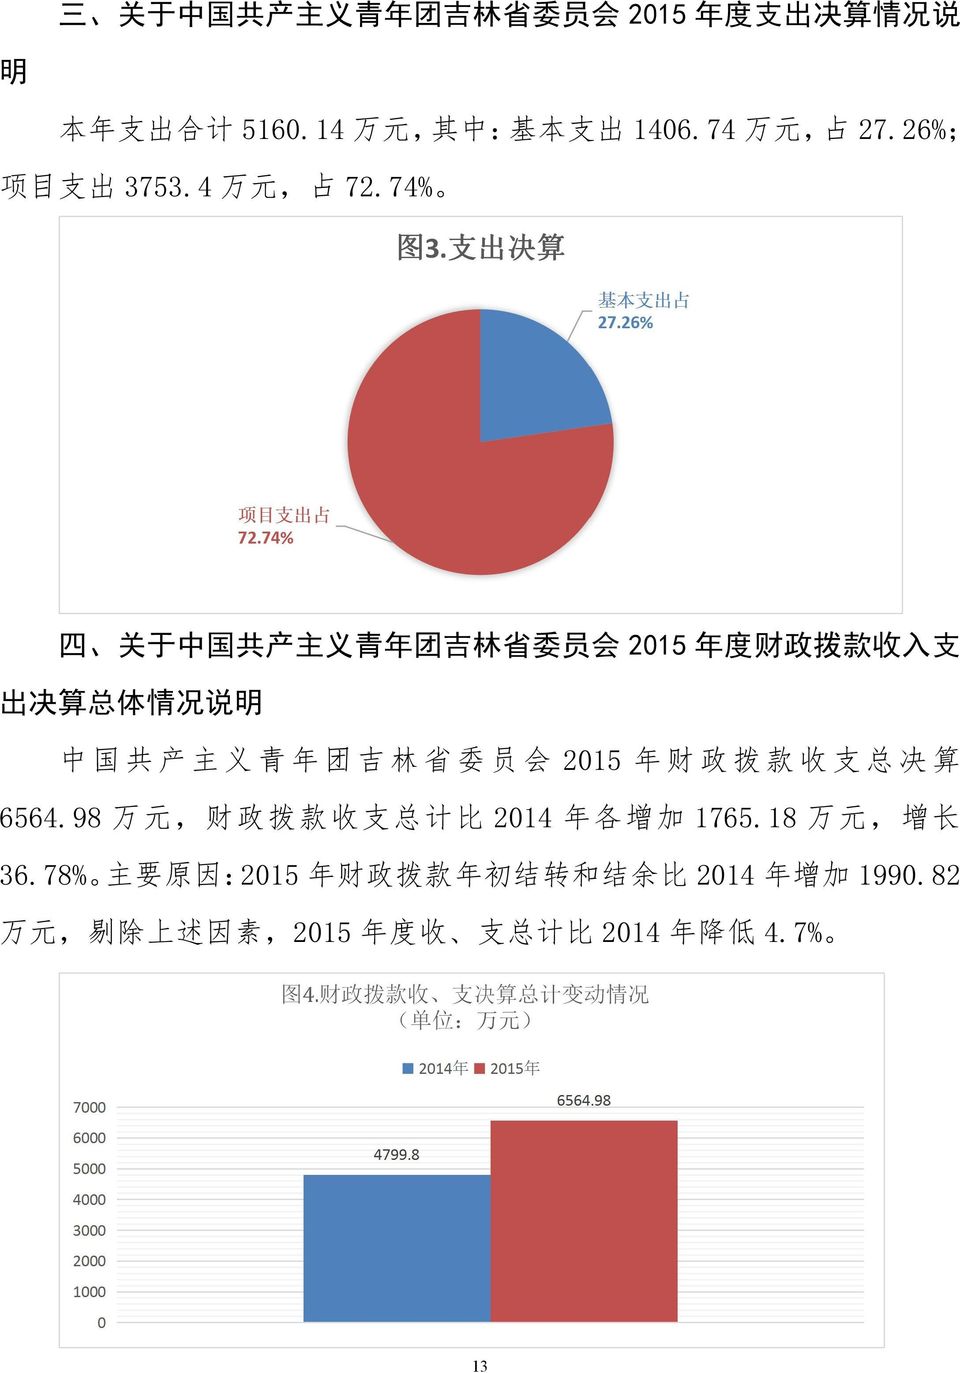 74% 四 关 于 中 国 共 产 主 义 青 年 团 吉 林 省 委 员 会 2015 年 度 财 政 拨 款 收 入 支 出 决 算 总 体 情 况 说 明 中 国 共 产 主 义 青 年 团 吉 林 省 委 员 会 2015